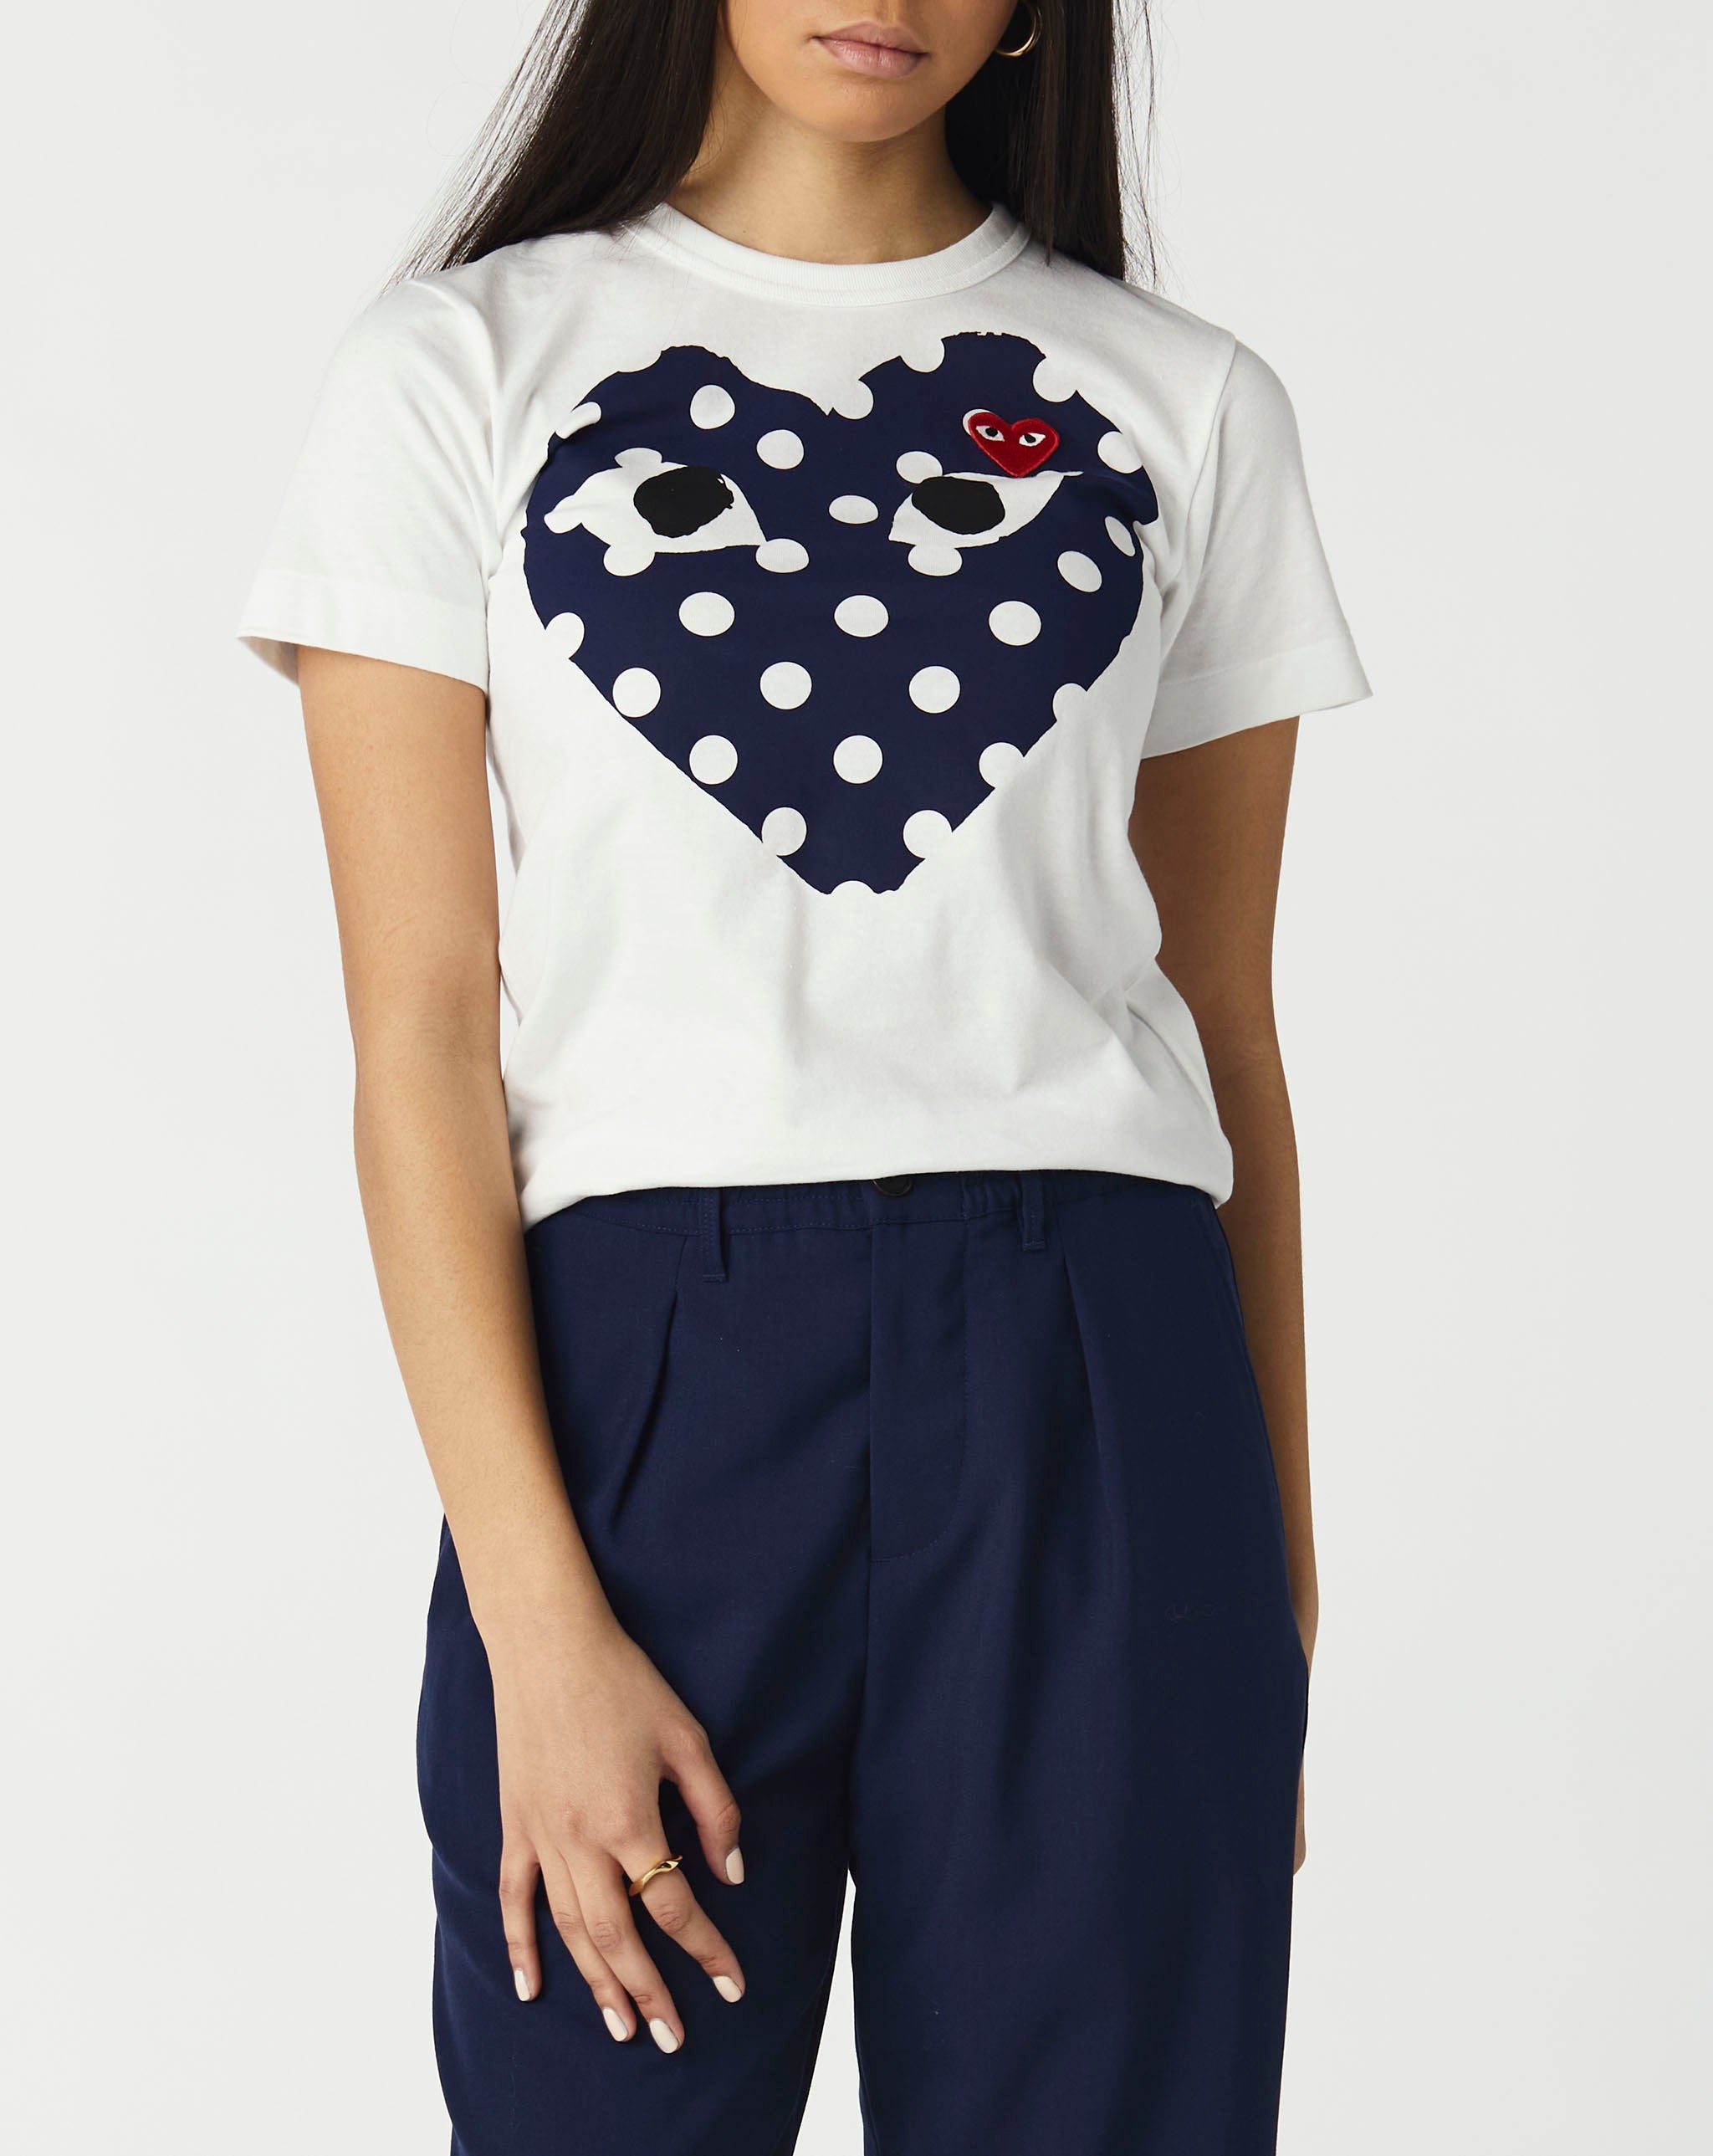 Womens Heart T-Shirt Women's Play Polka Dot T-Shirt  - Cheap Urlfreeze Jordan outlet